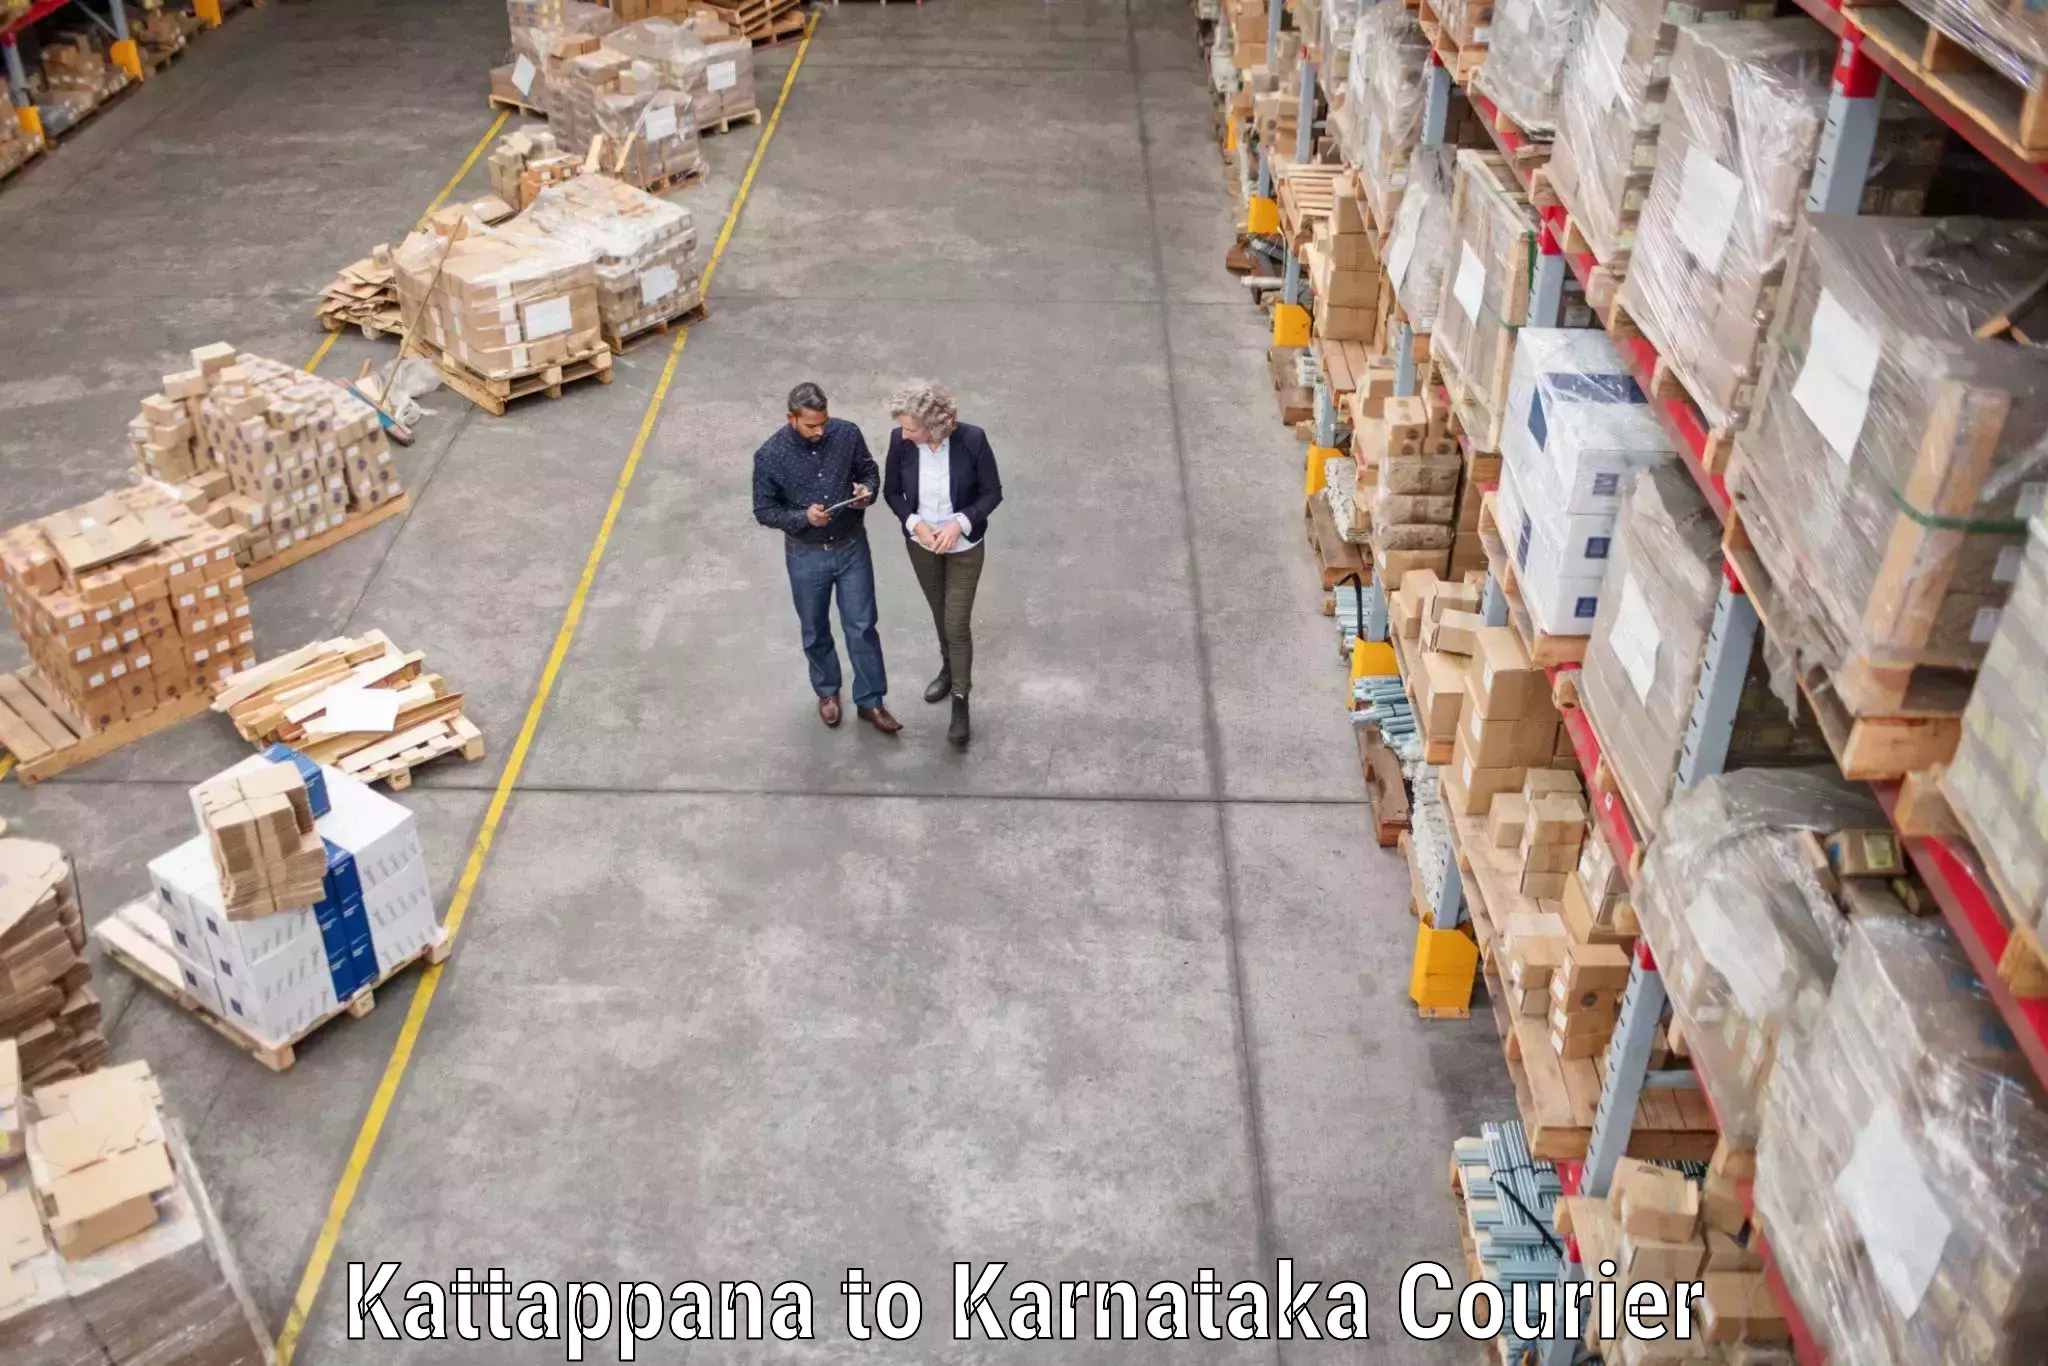 Expert moving and storage in Kattappana to Harohalli